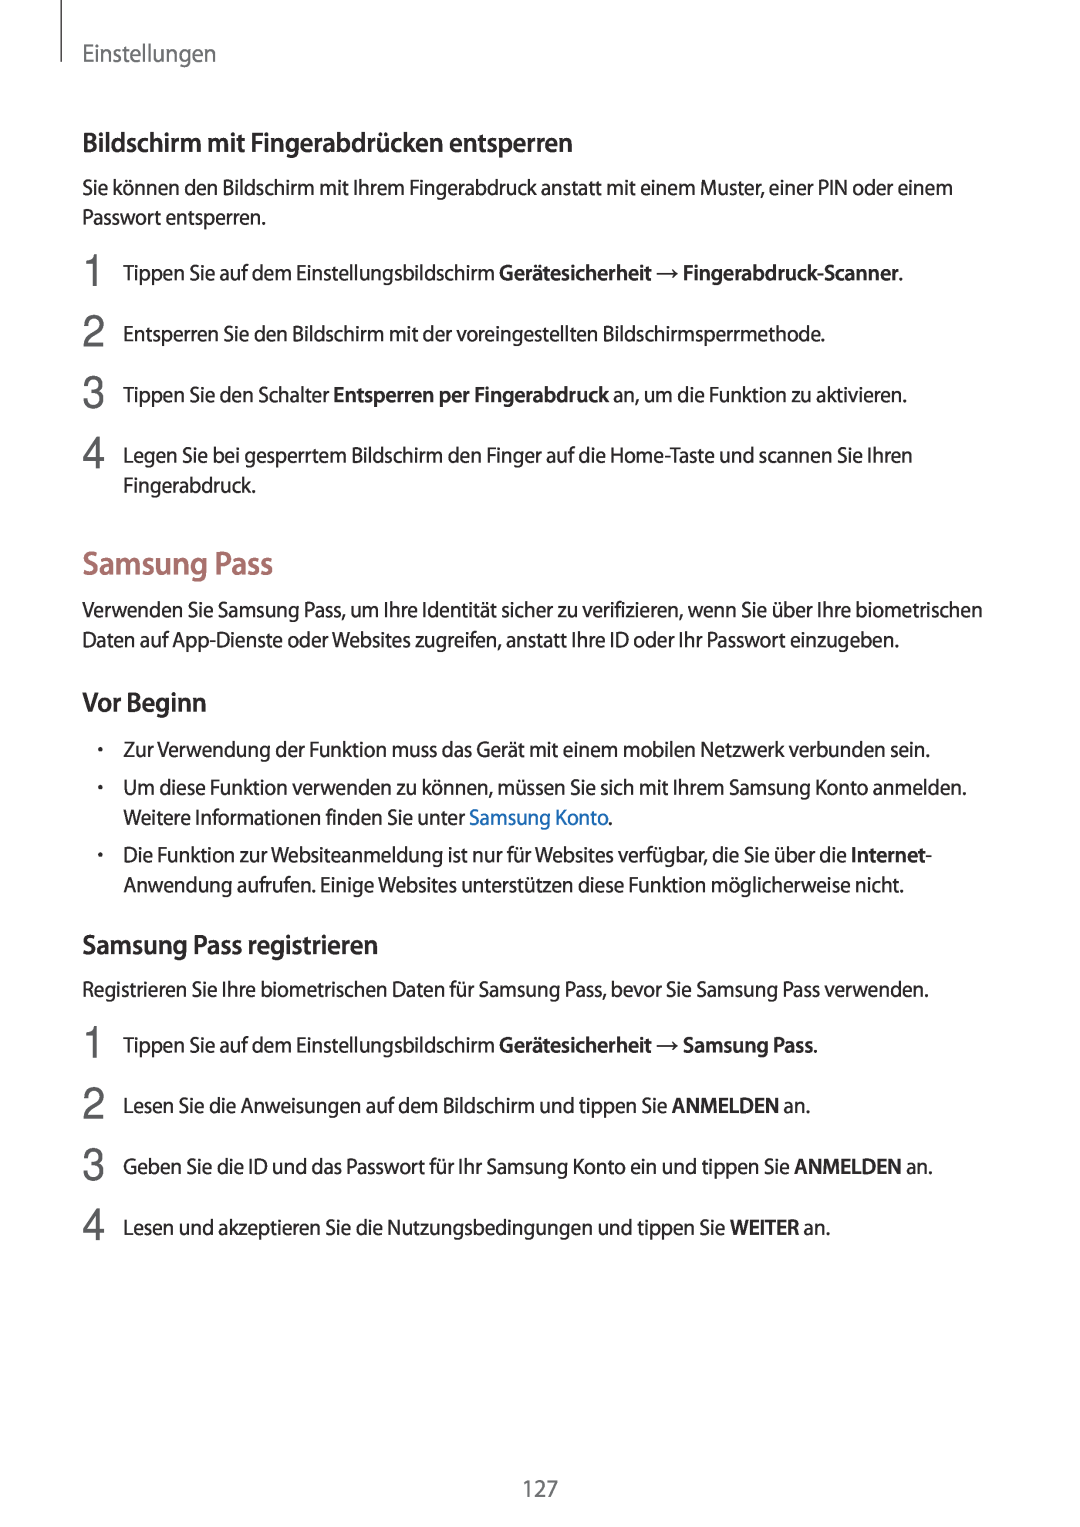 Samsung SM-J530FZSADDE Bildschirm mit Fingerabdrücken entsperren, Samsung Pass registrieren, Vor Beginn, Einstellungen 